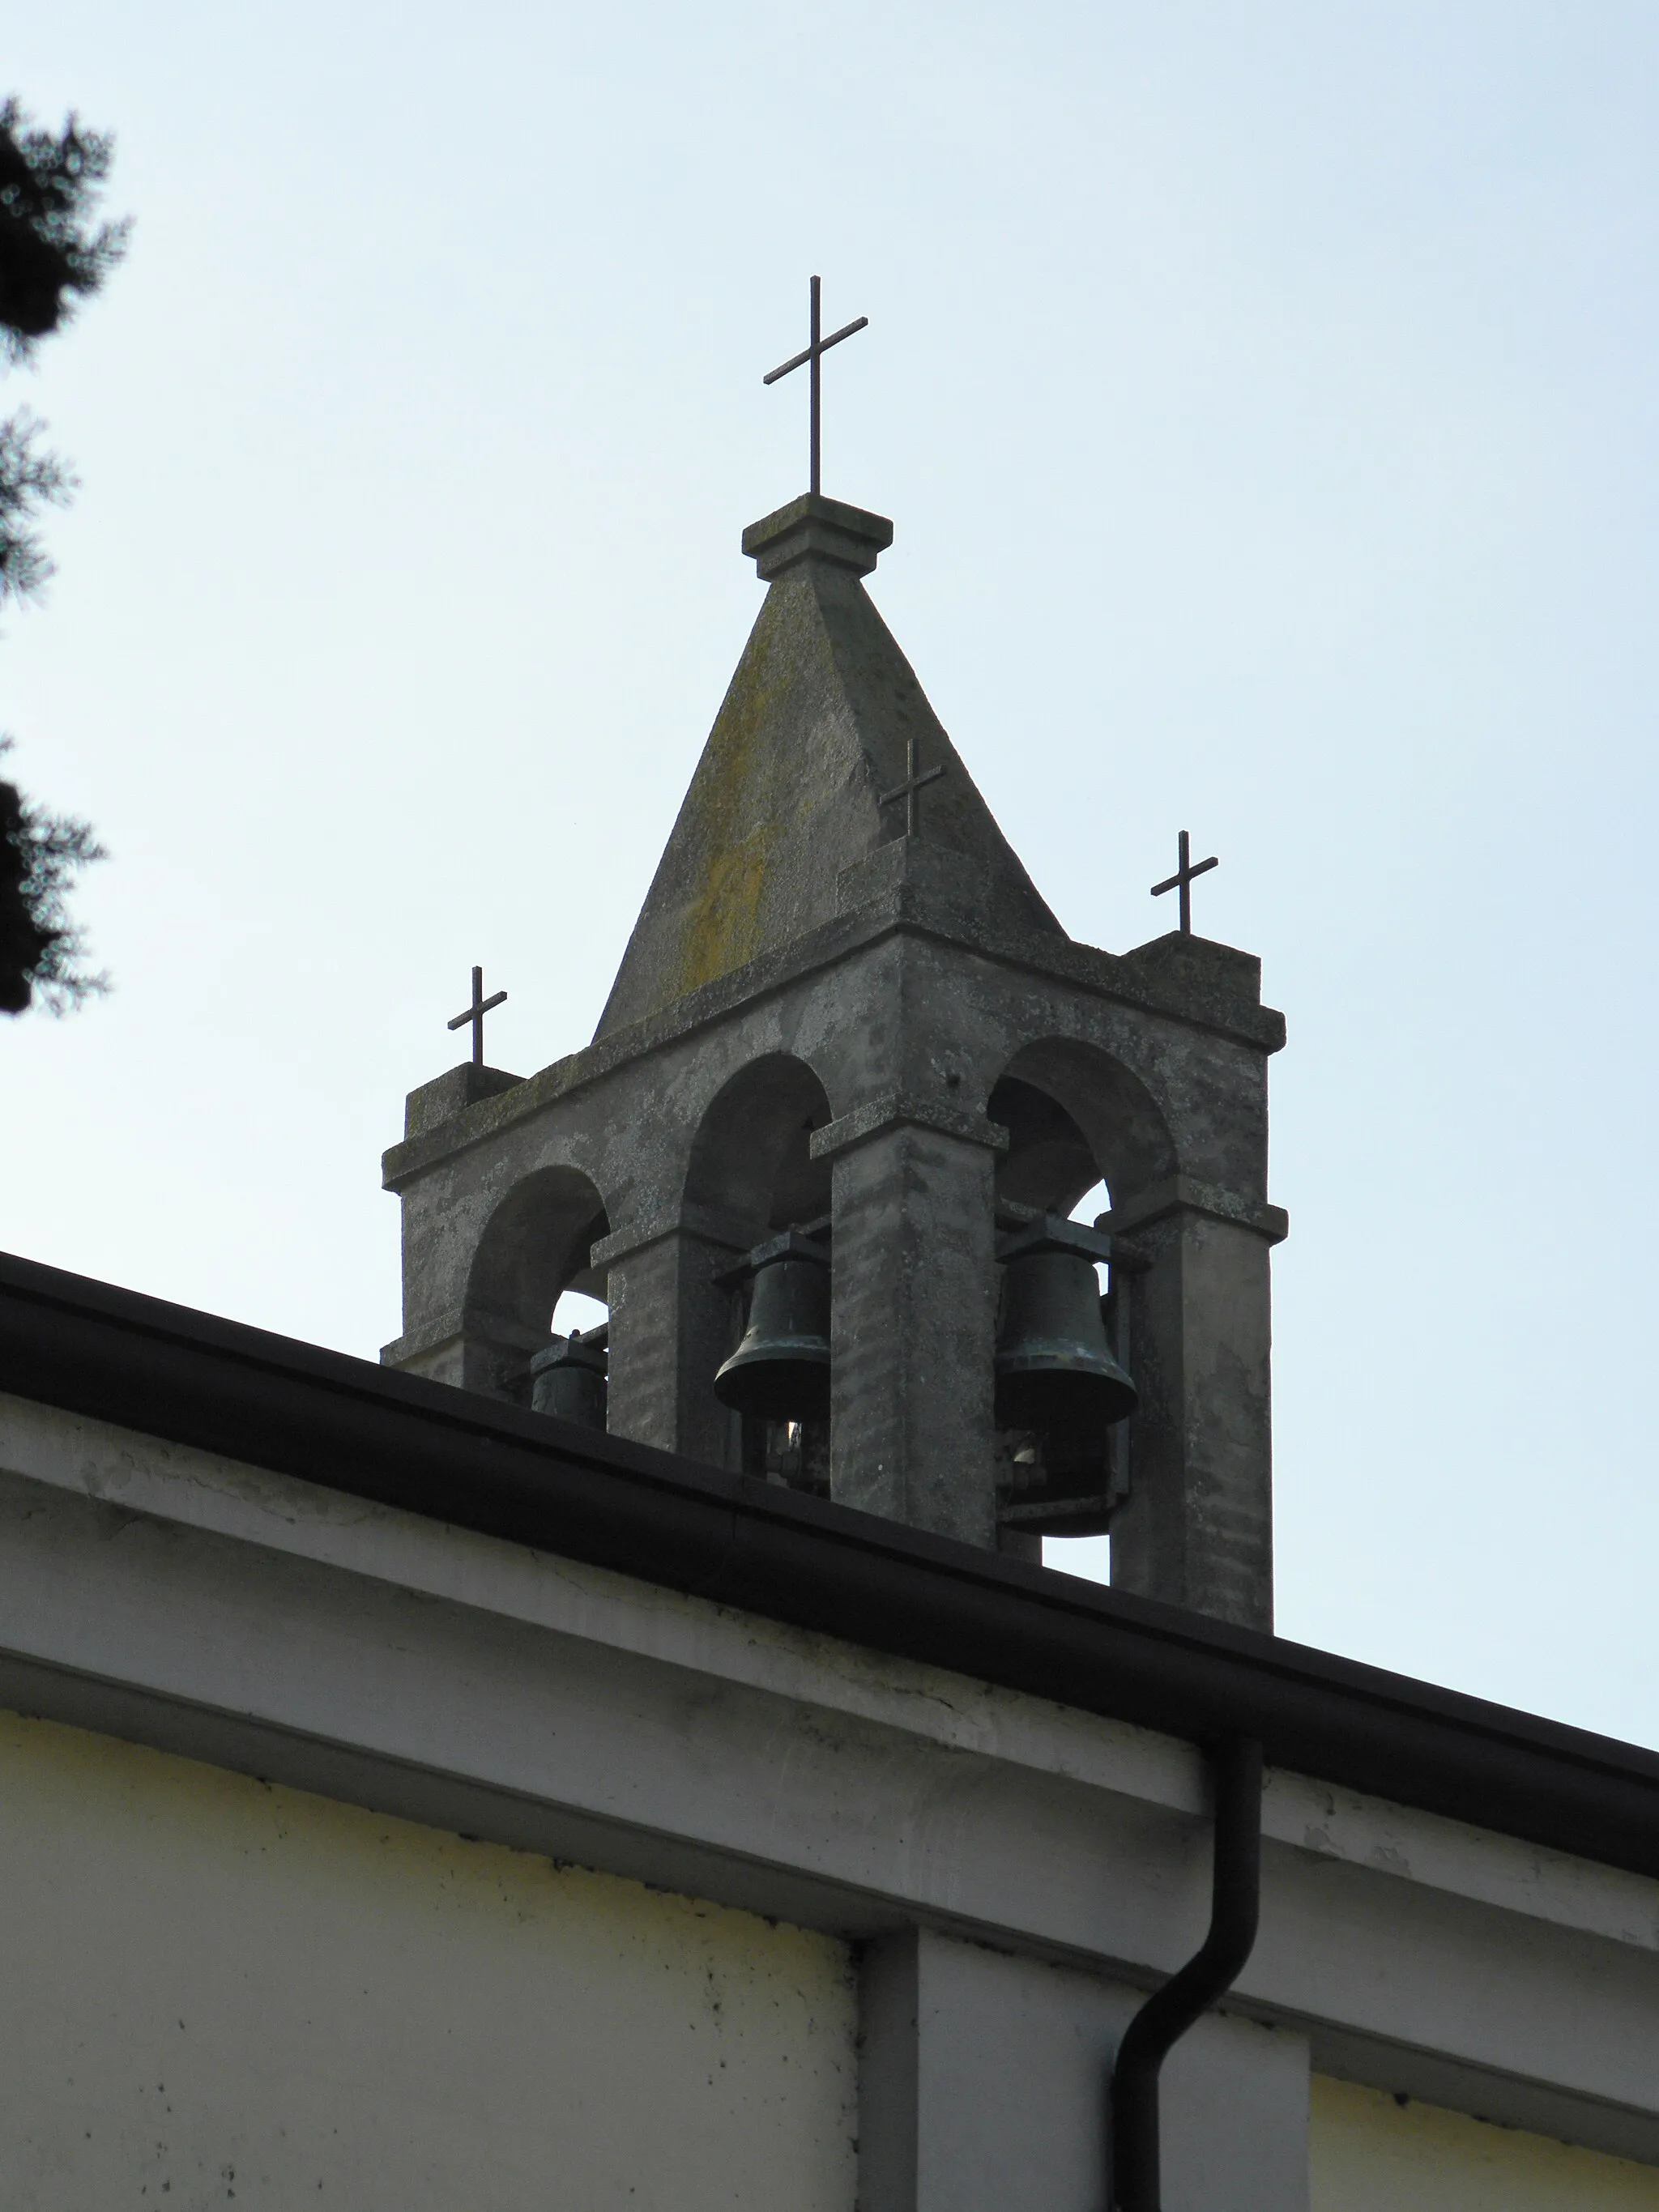 Photo showing: Brazzolo, frazione di Copparo: rivisitazione moderna del classico campanile a vela presente sulla chiesa parrocchiale dei Santi Agata e Gaetano.